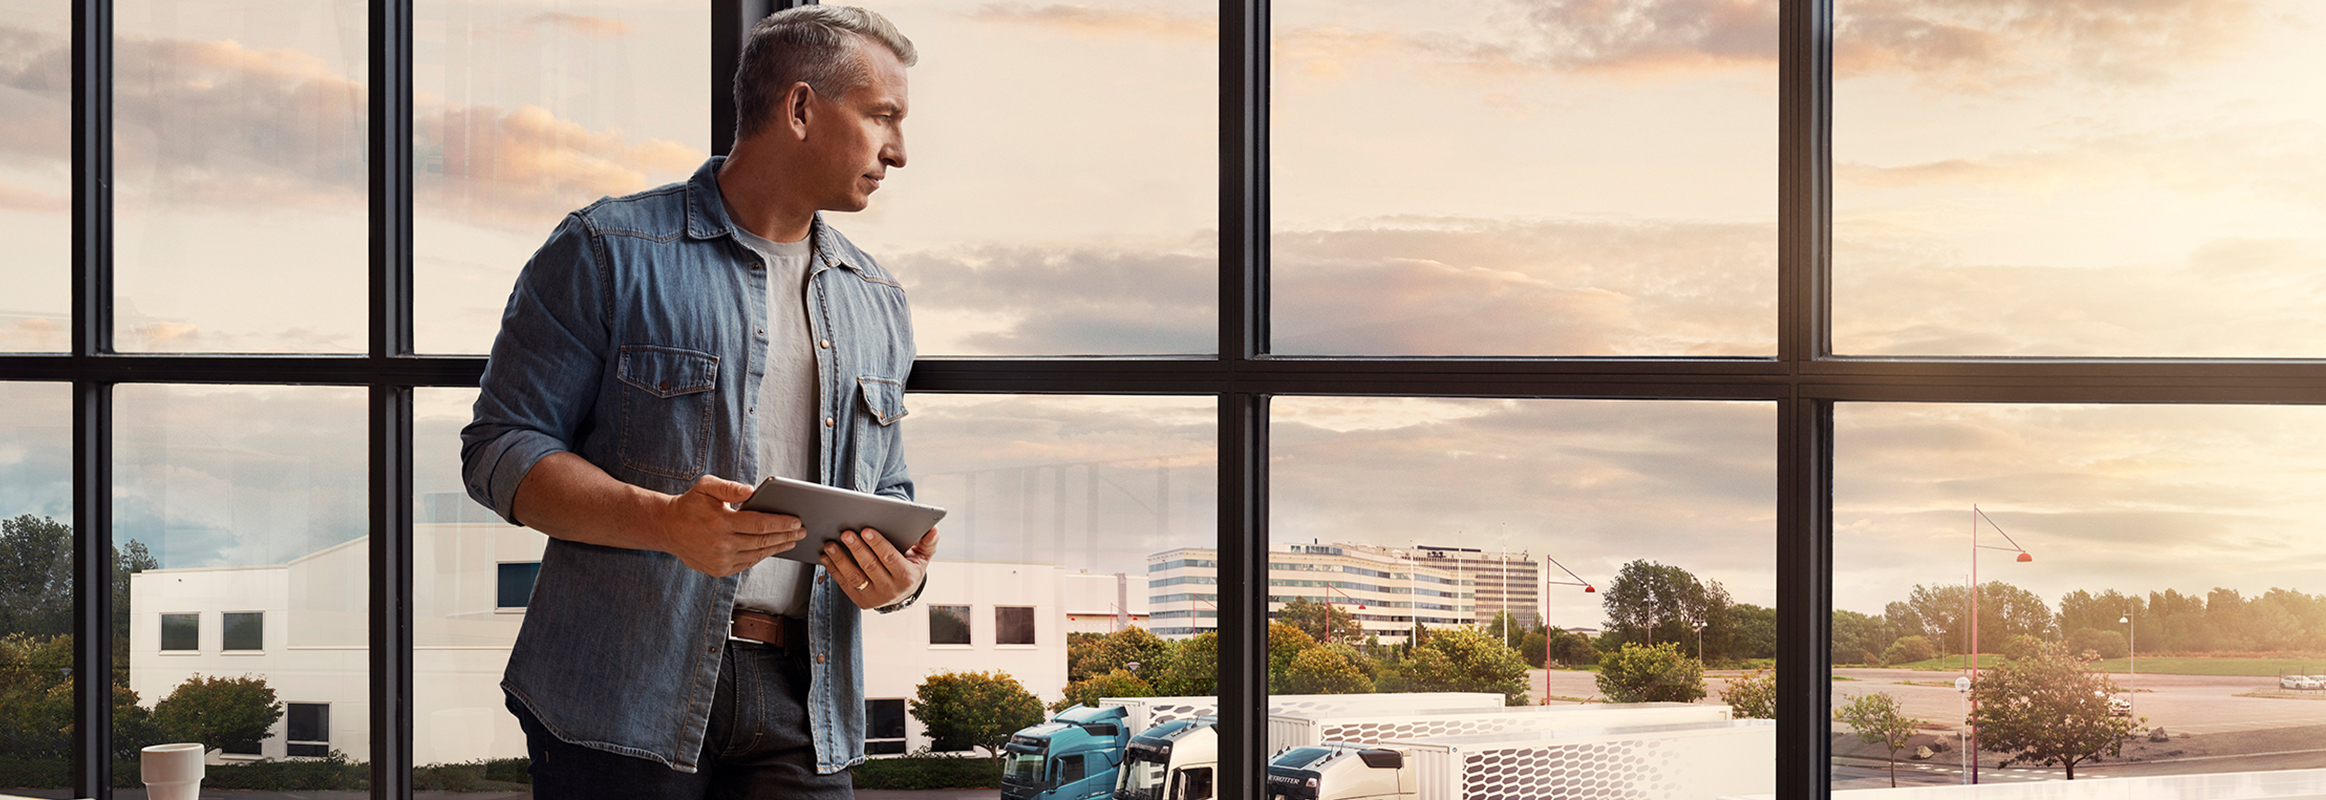 Un hombre que sostiene una tablet junto a una ventana y observa su flota de camiones